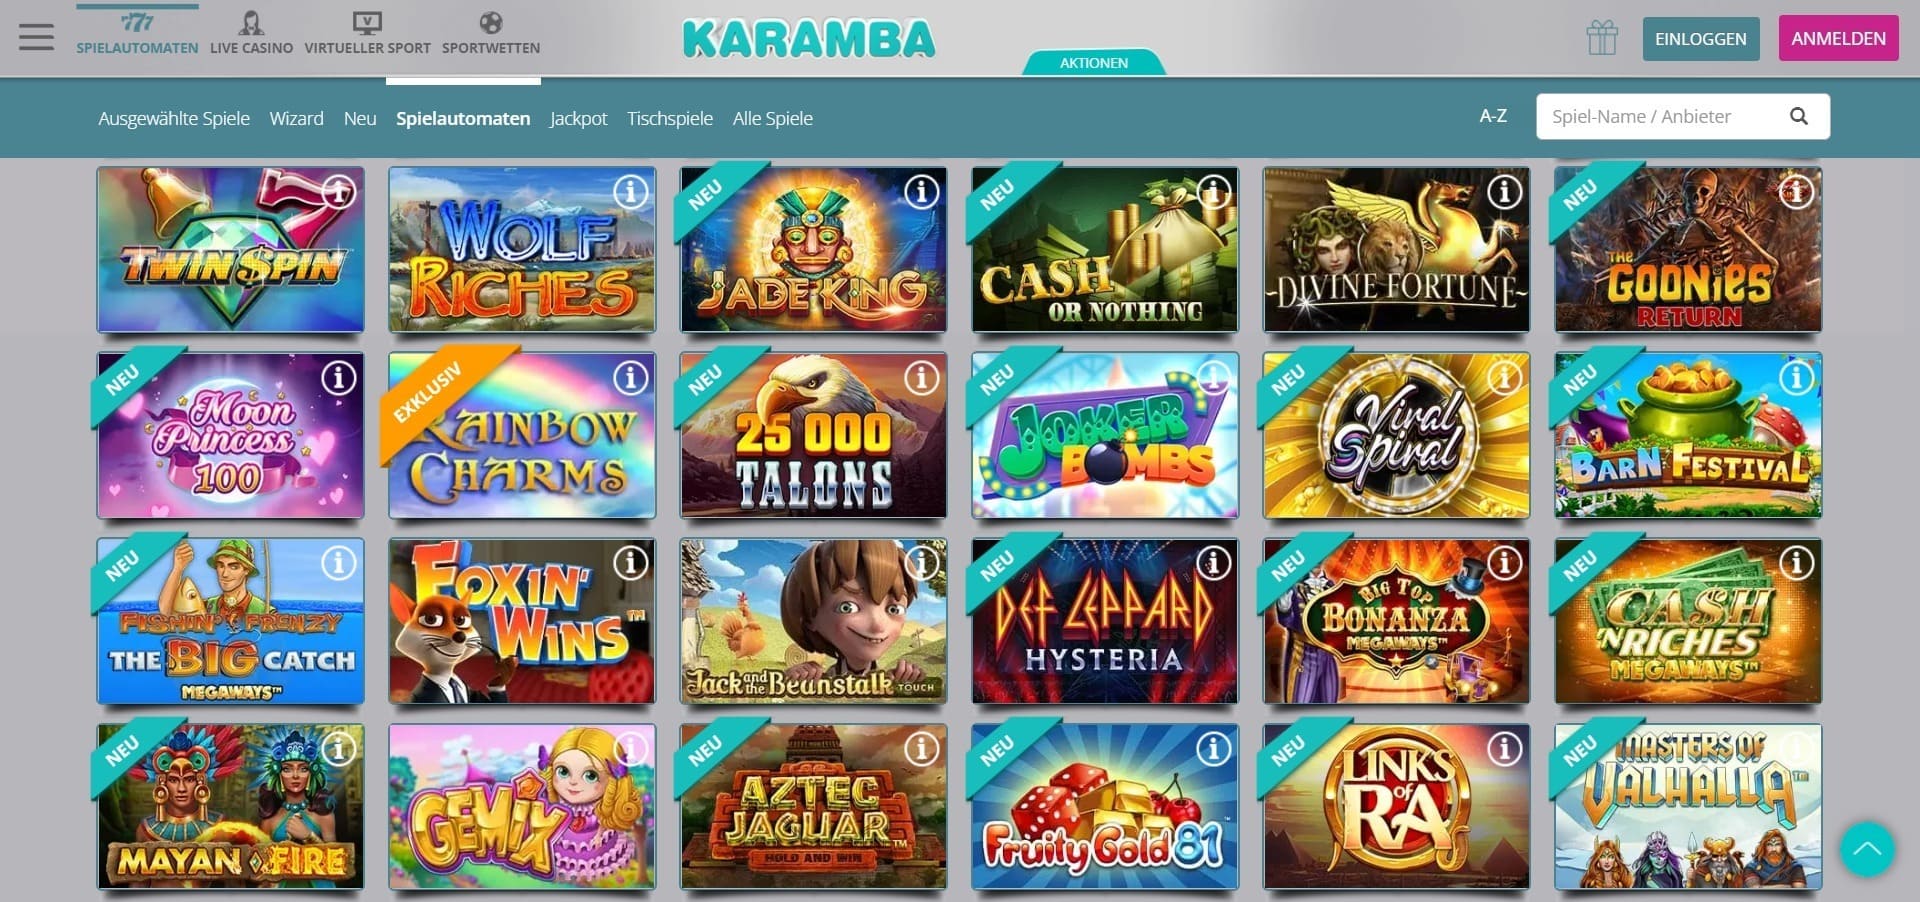 Karamba Casino slot machines